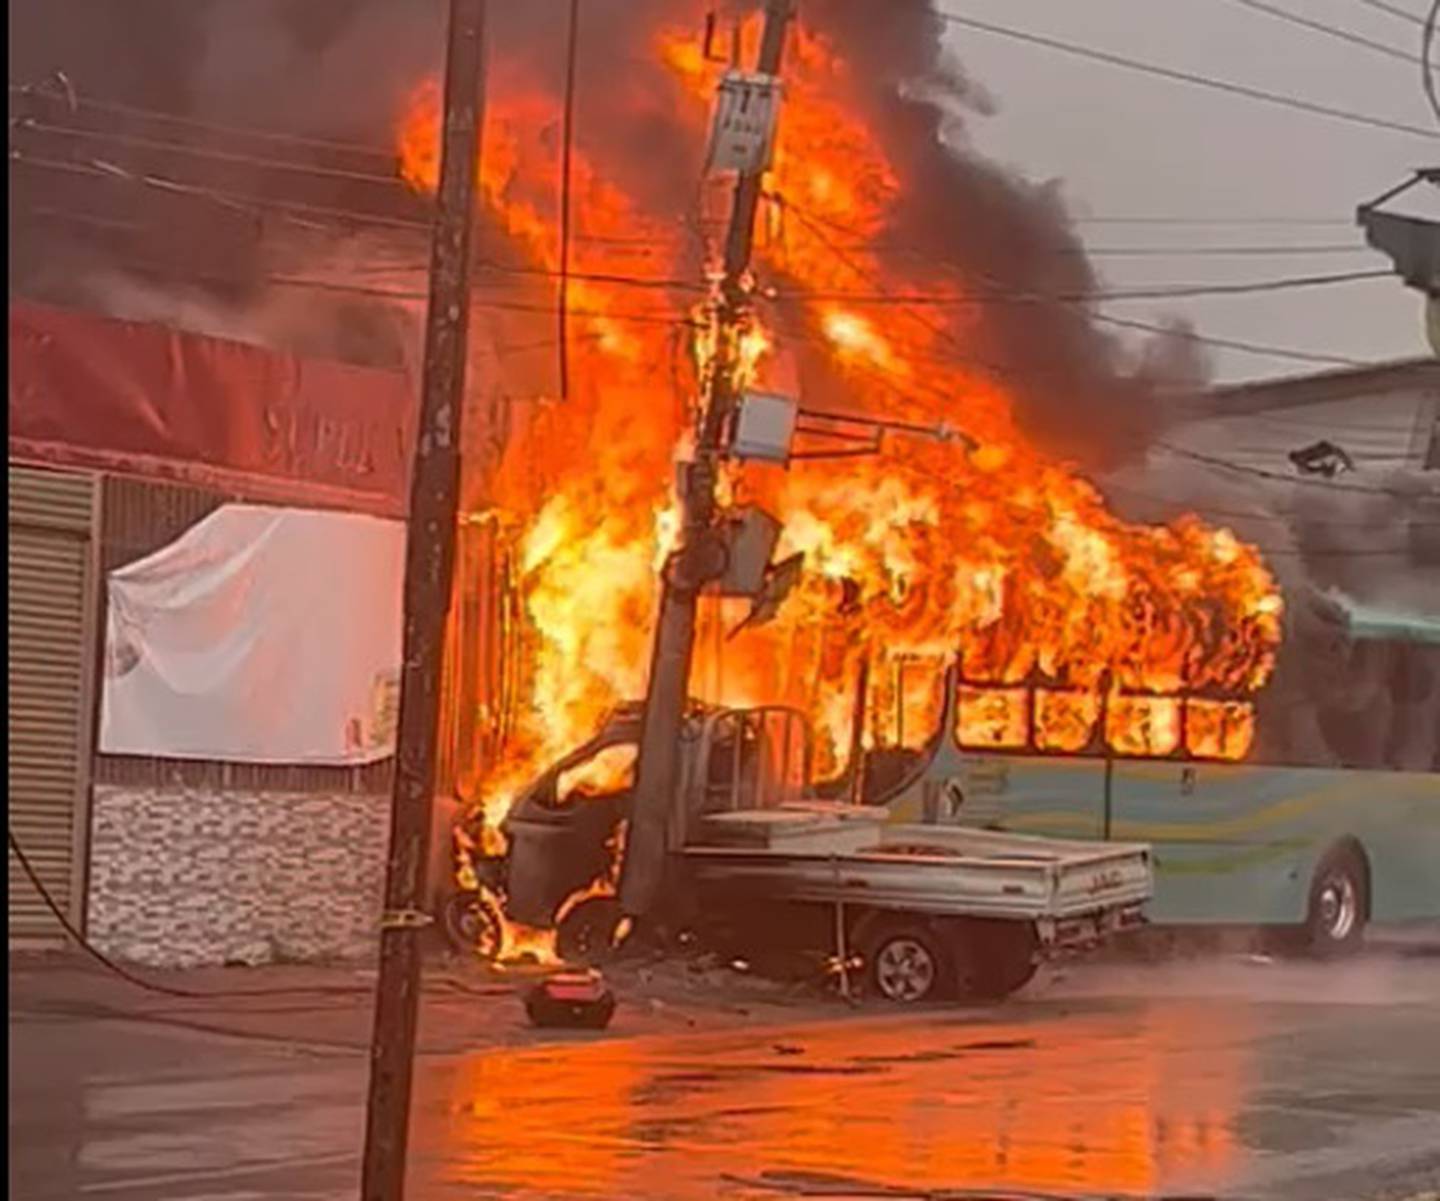 Bus carro se queman tras choque en Cartago. Foto cortesía.